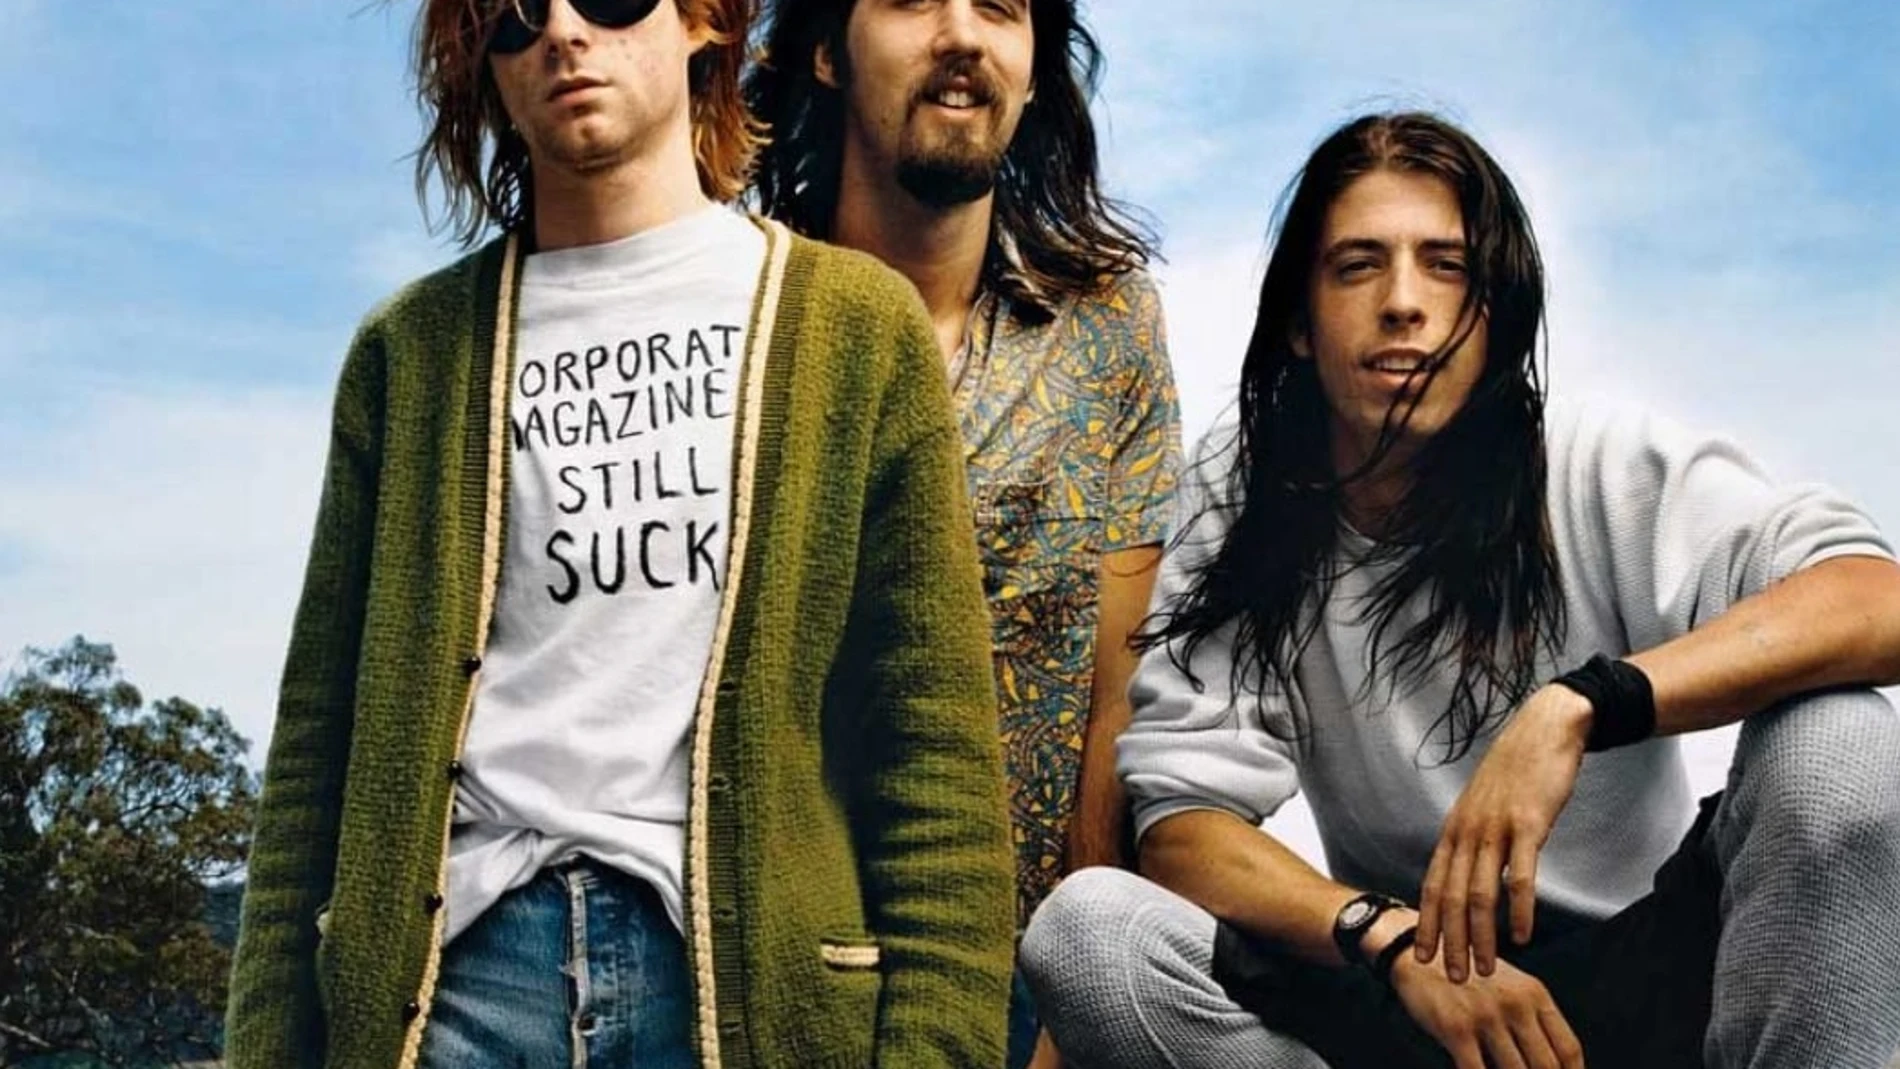 Nirvana, integrado por Kurt Cobain, Krist Novoselic y Dave Grohl, fueron el grupo insignia de Seattle y el "grunge".